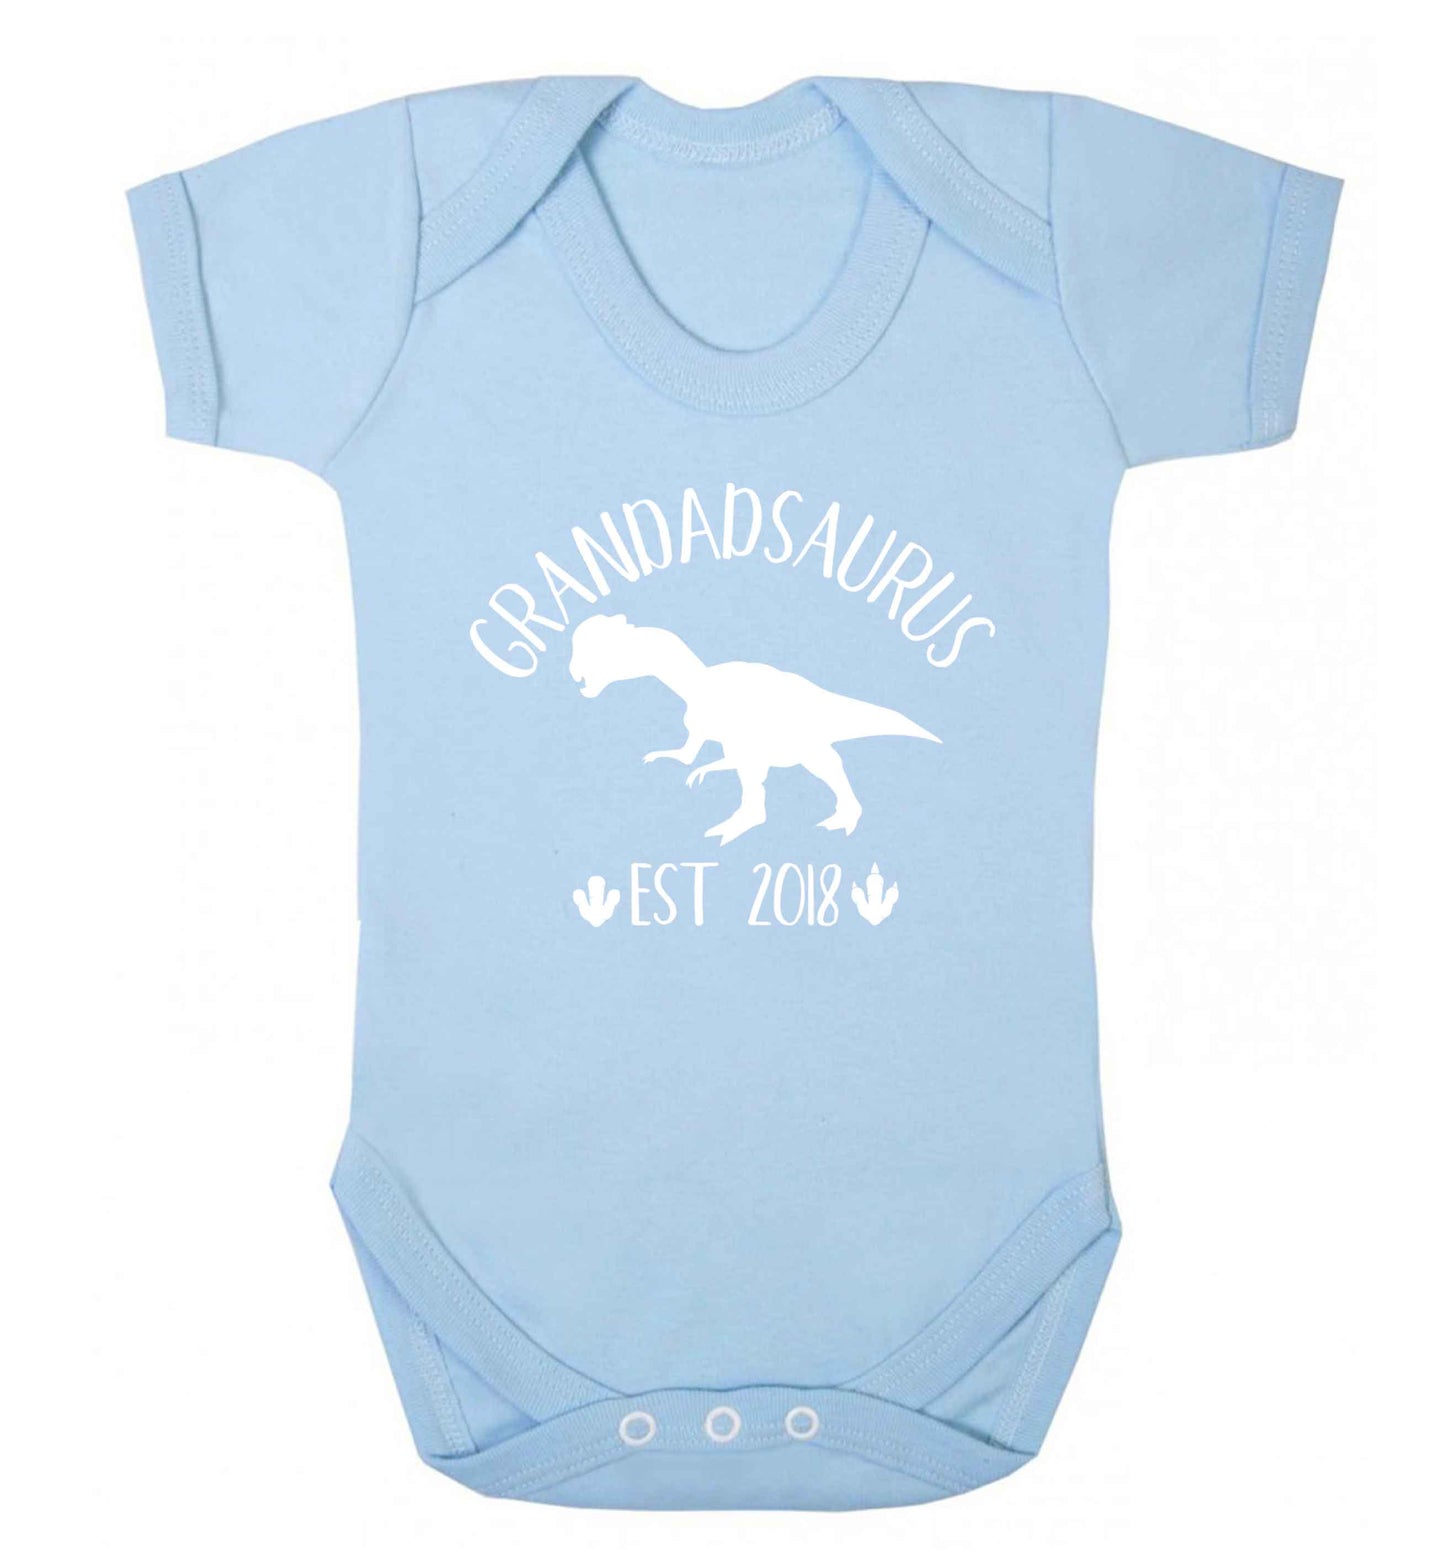 Personalised grandadsaurus since (custom date) Baby Vest pale blue 18-24 months